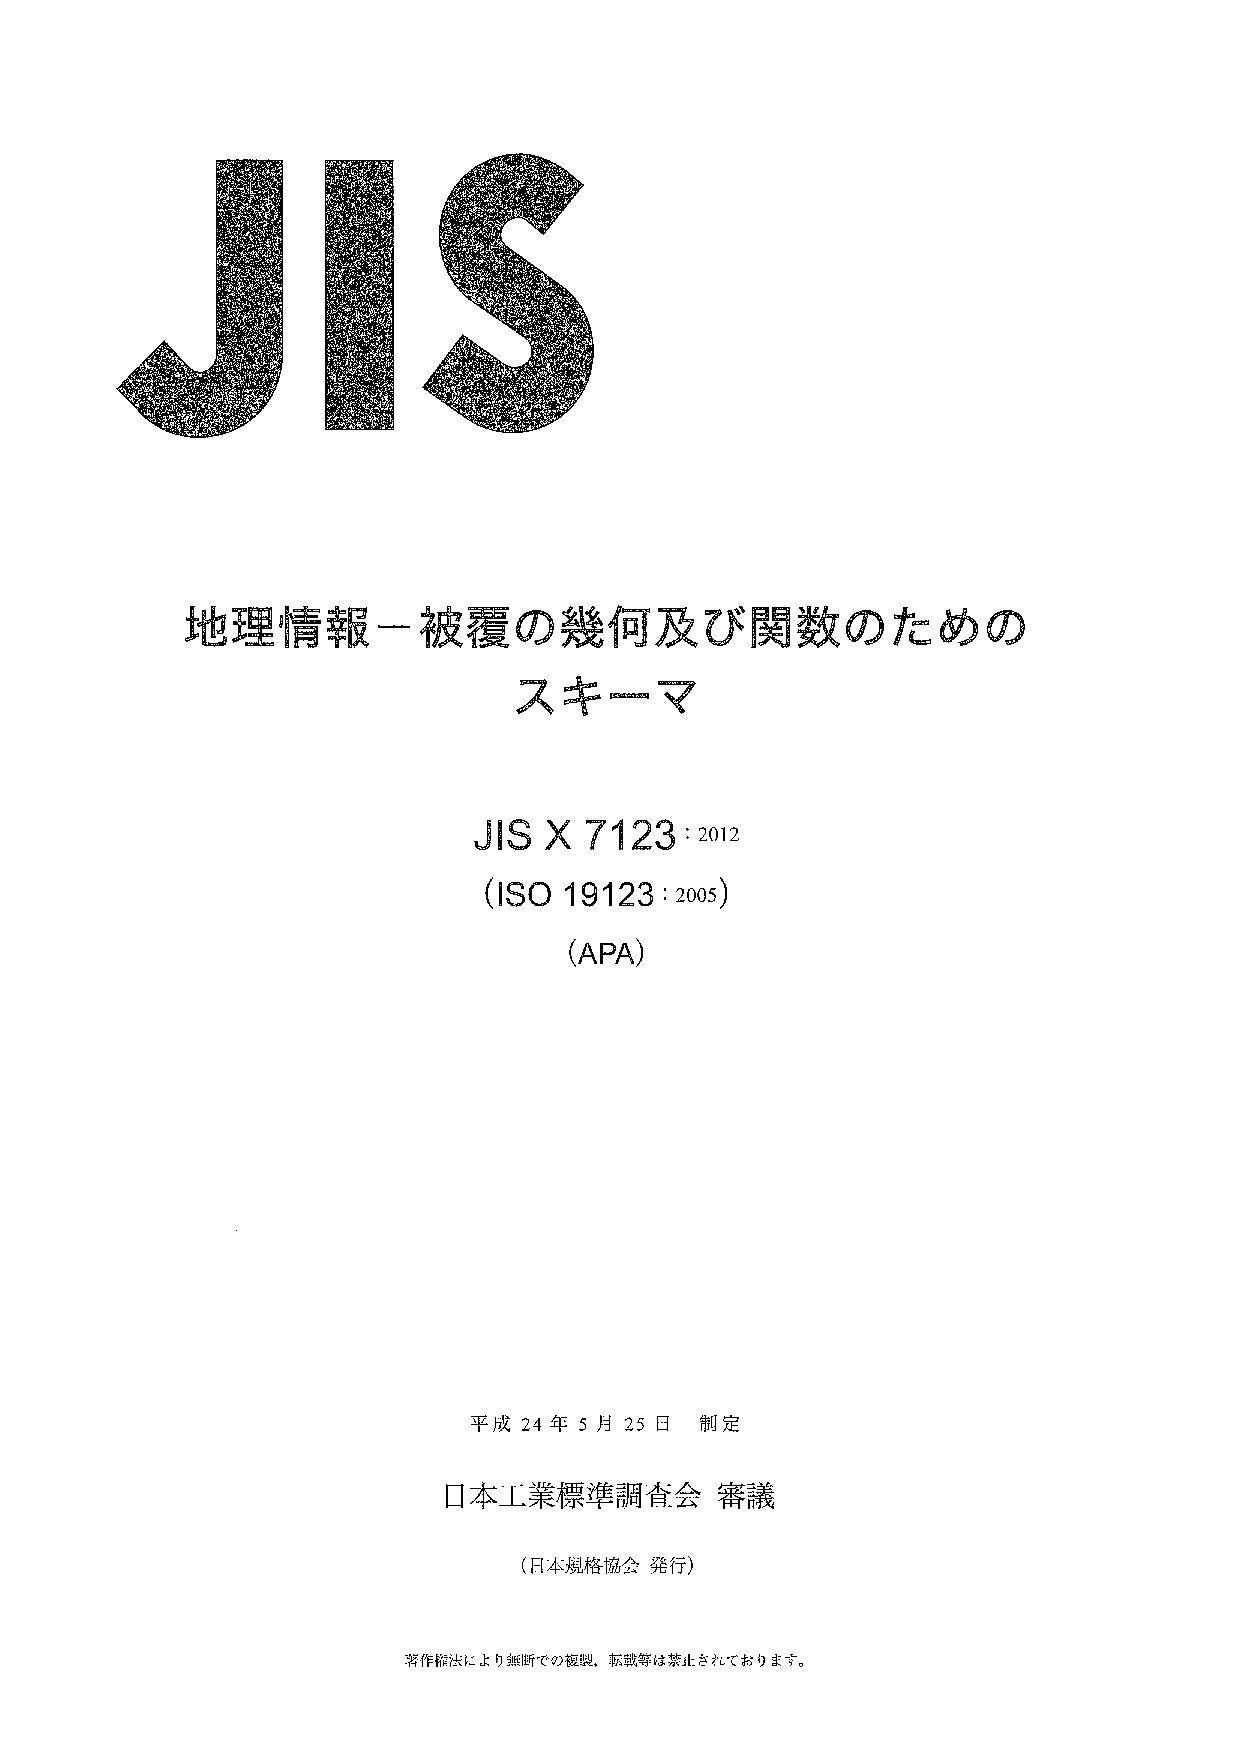 JIS X 7123:2012